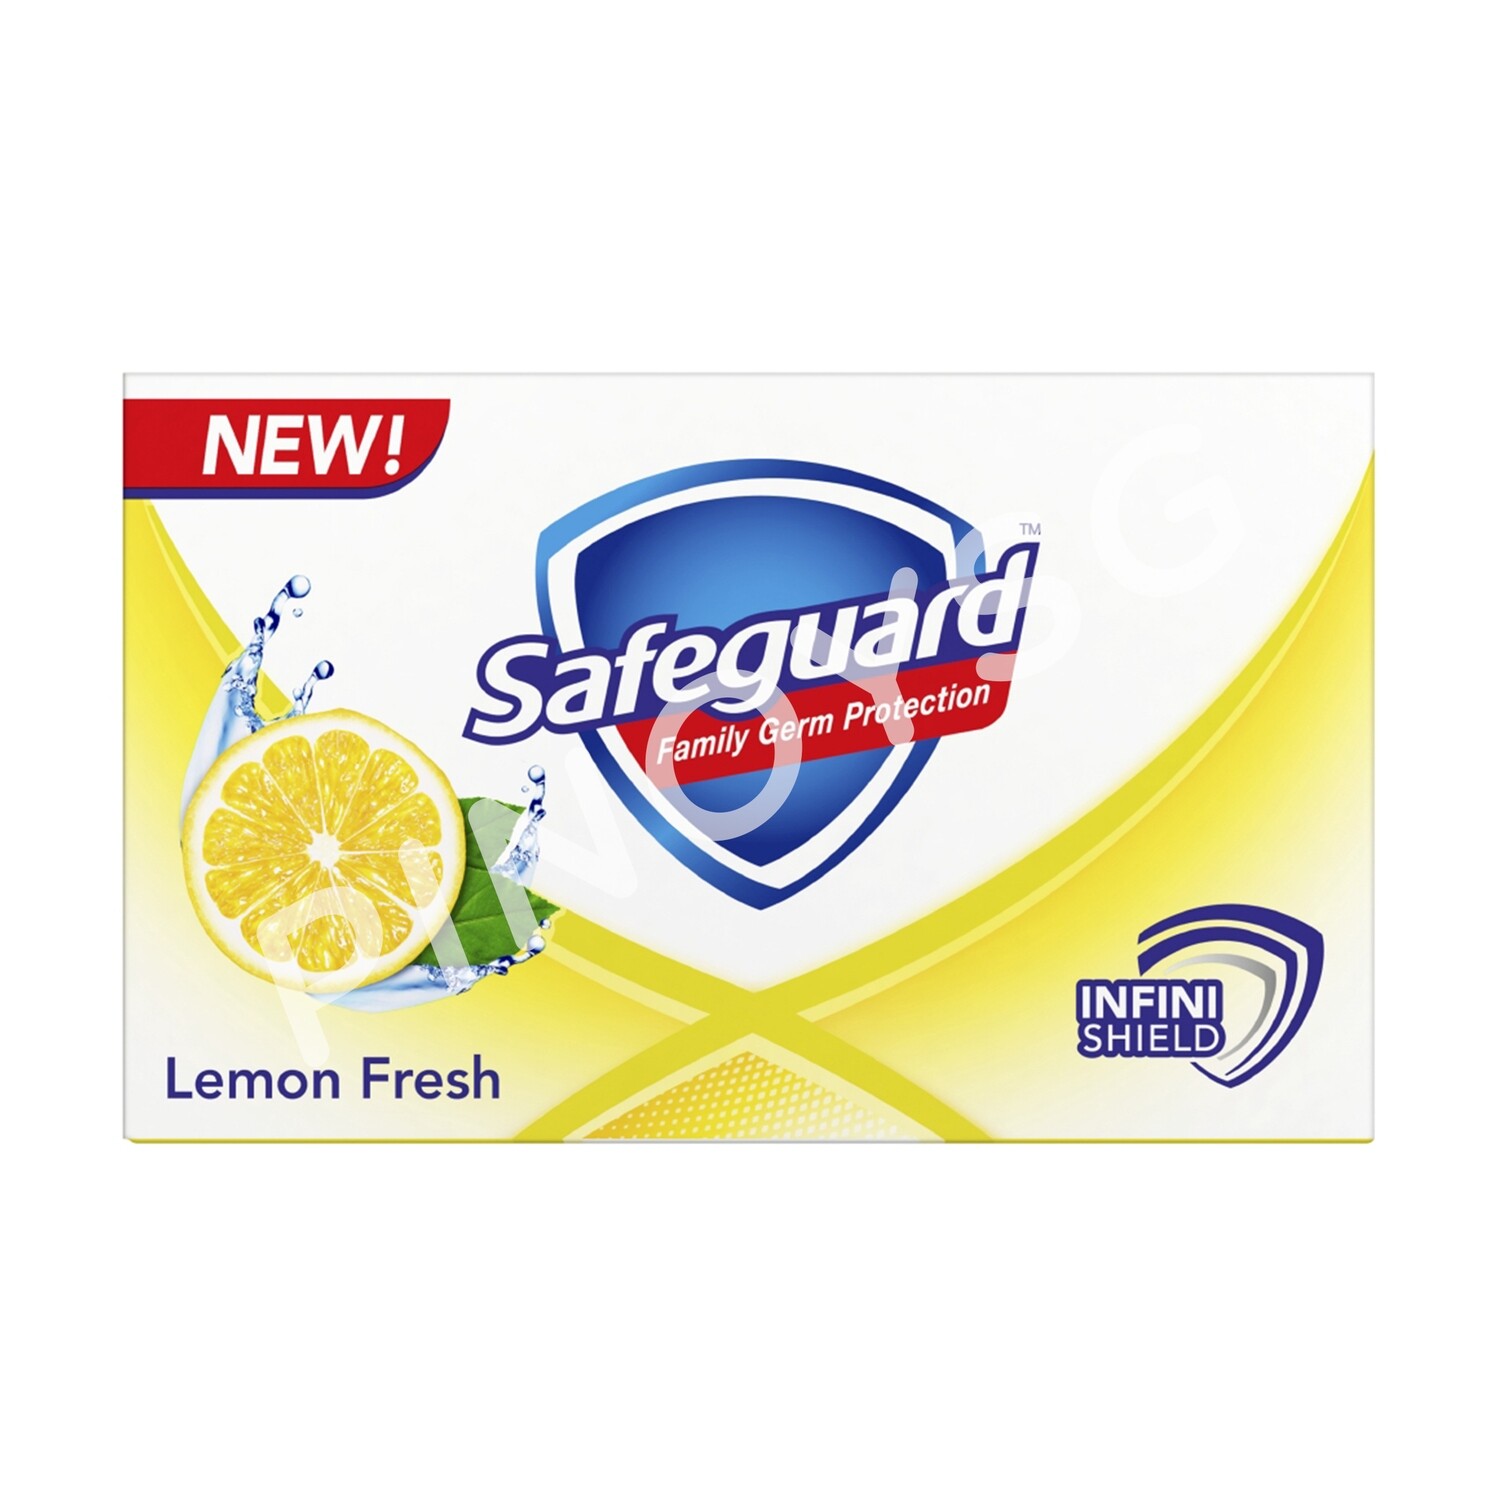 Safeguard Soap Lemon Fresh 130g